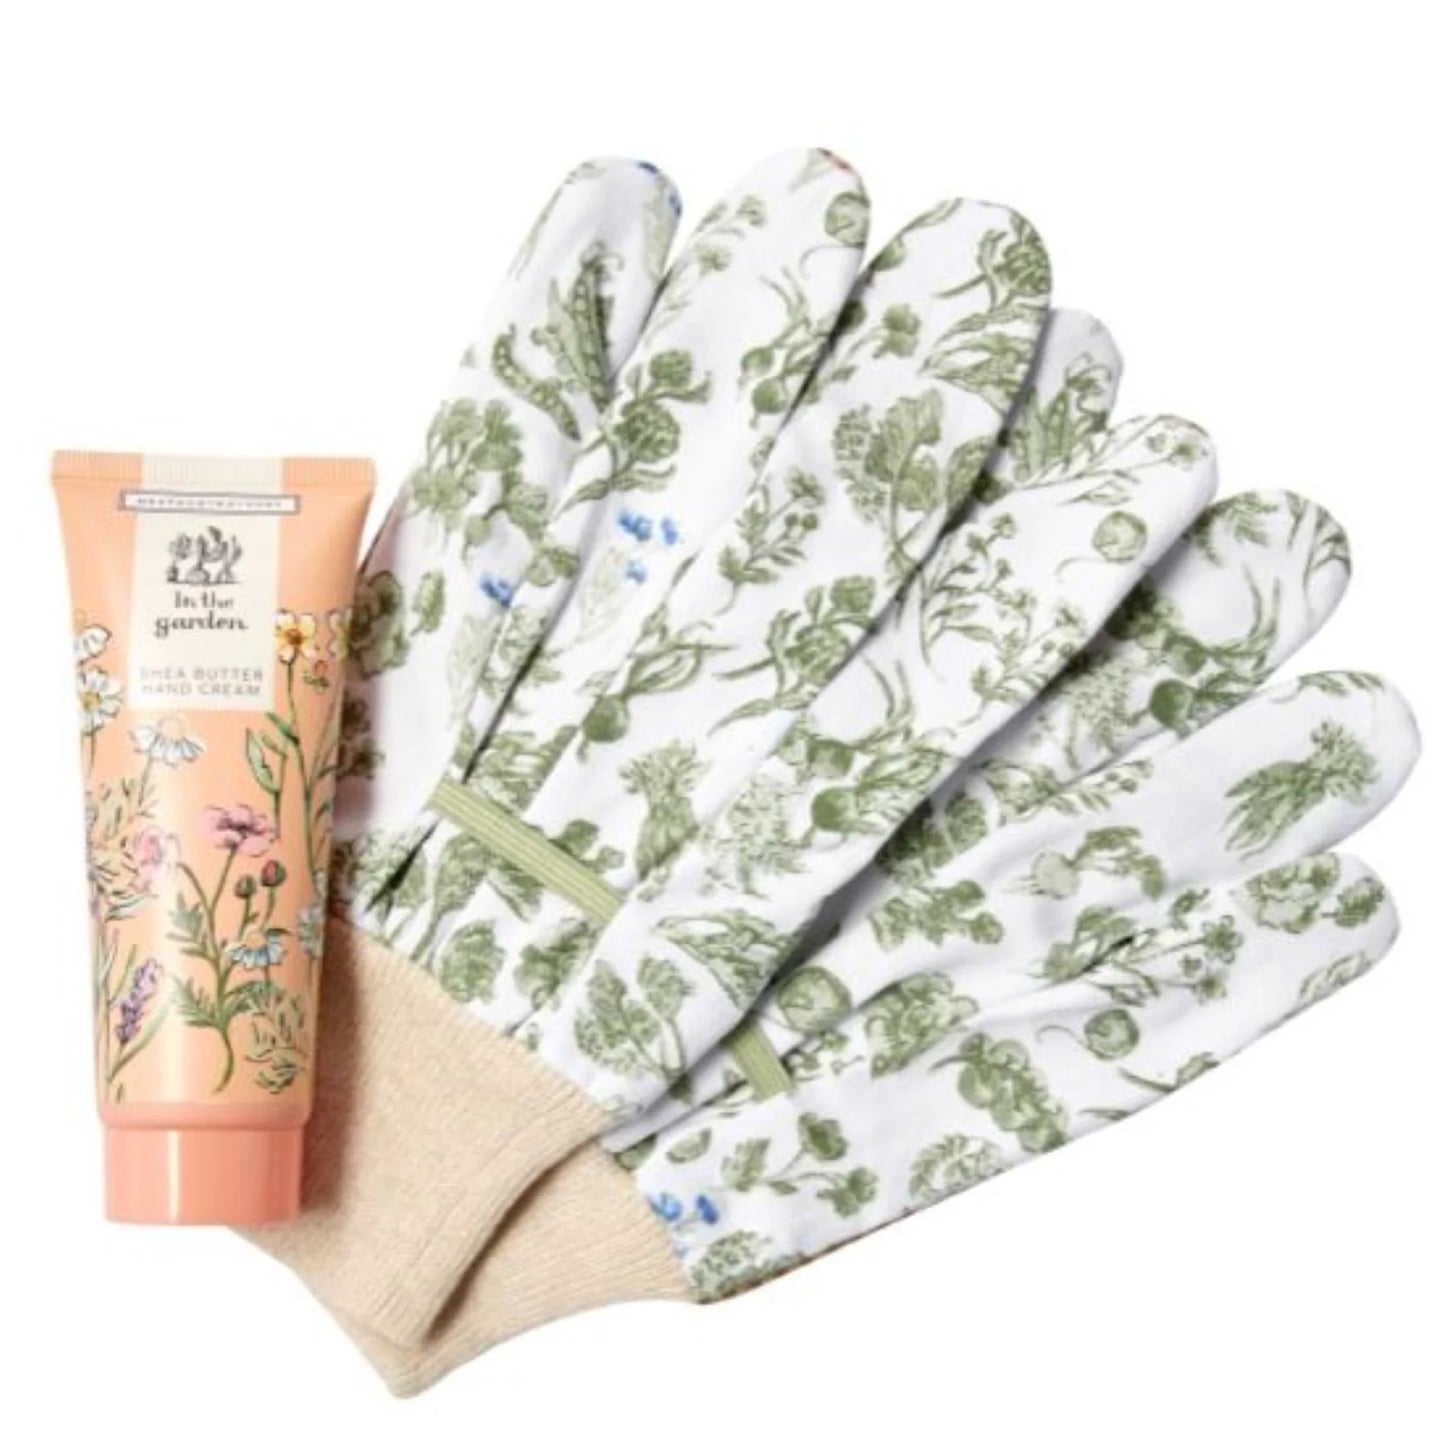 In The Garden Gardening Gloves & Hand Cream Set